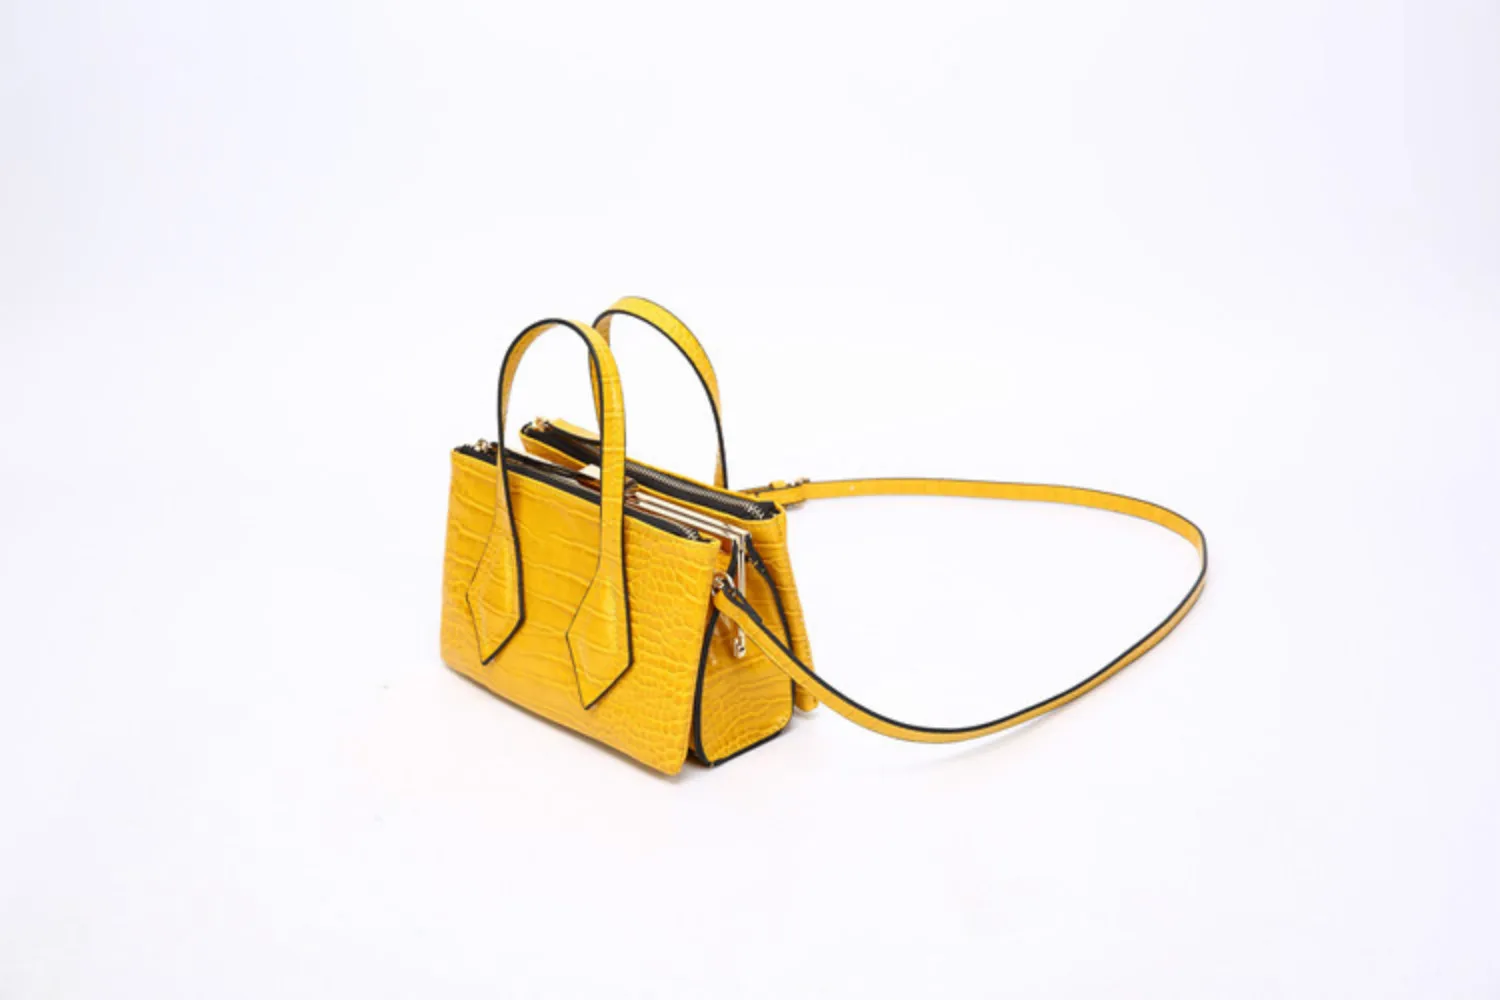 Известный Бренд роскошные сумки дизайнерские сумки для женщин PU мини квадратные сумочки рамки молнии женские сумки на плечо Sac основной